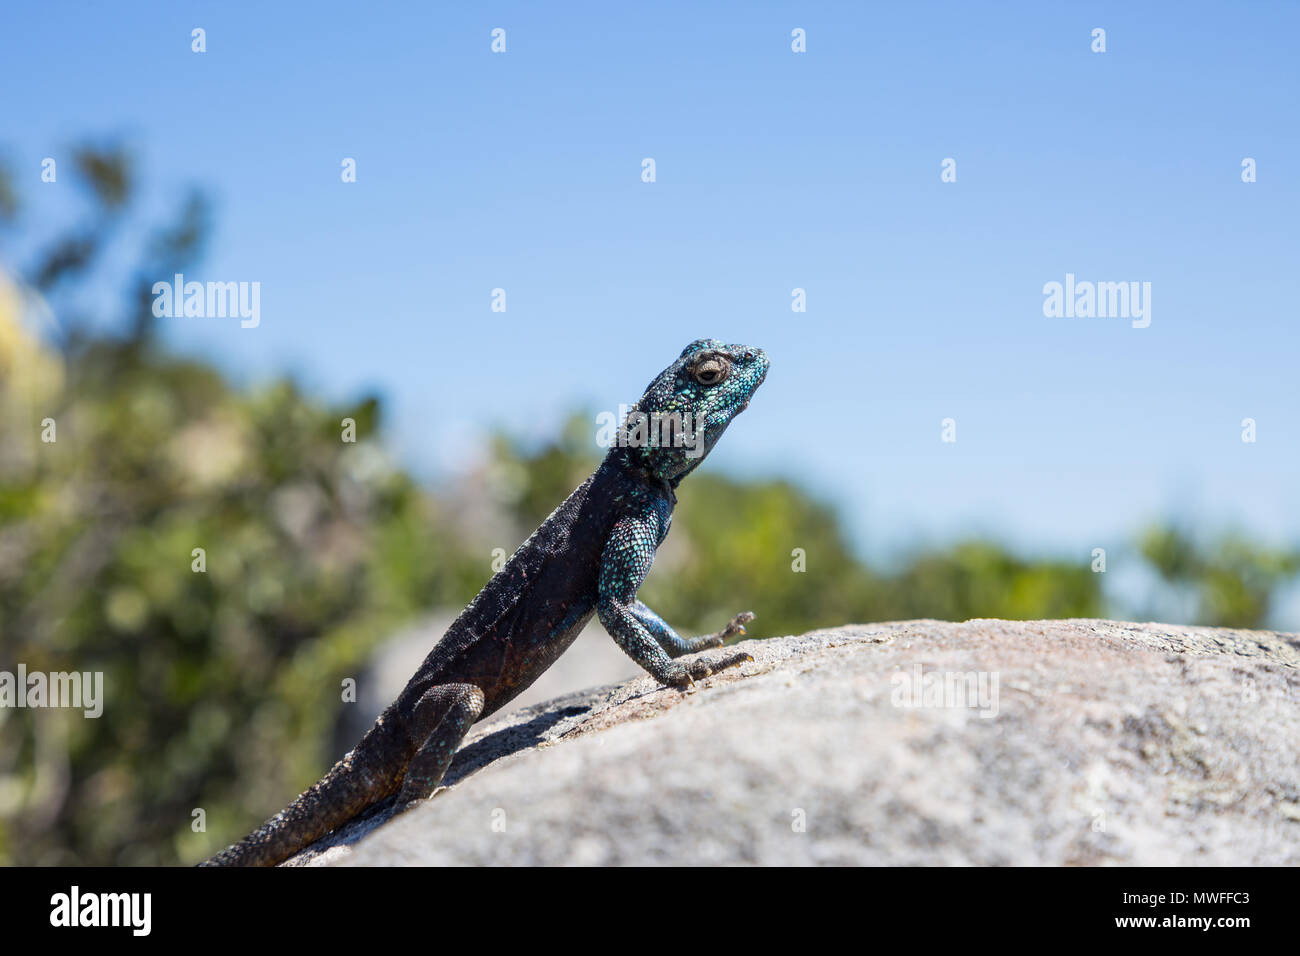 Southern Rock Agama Lizard auf einem Felsen mit blauem Himmel Hintergrund Stockfoto